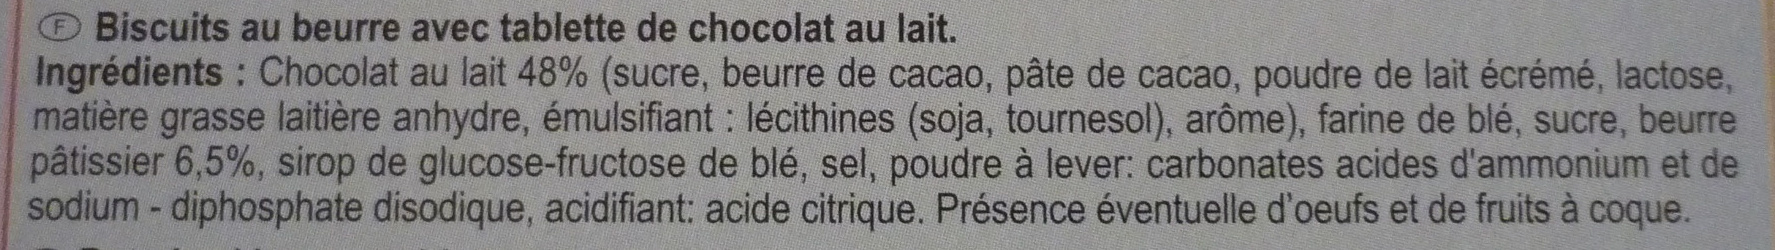 POCKET LE PETIT BEURRE TABLETTE Chocolat au lait - Ingredientes - fr